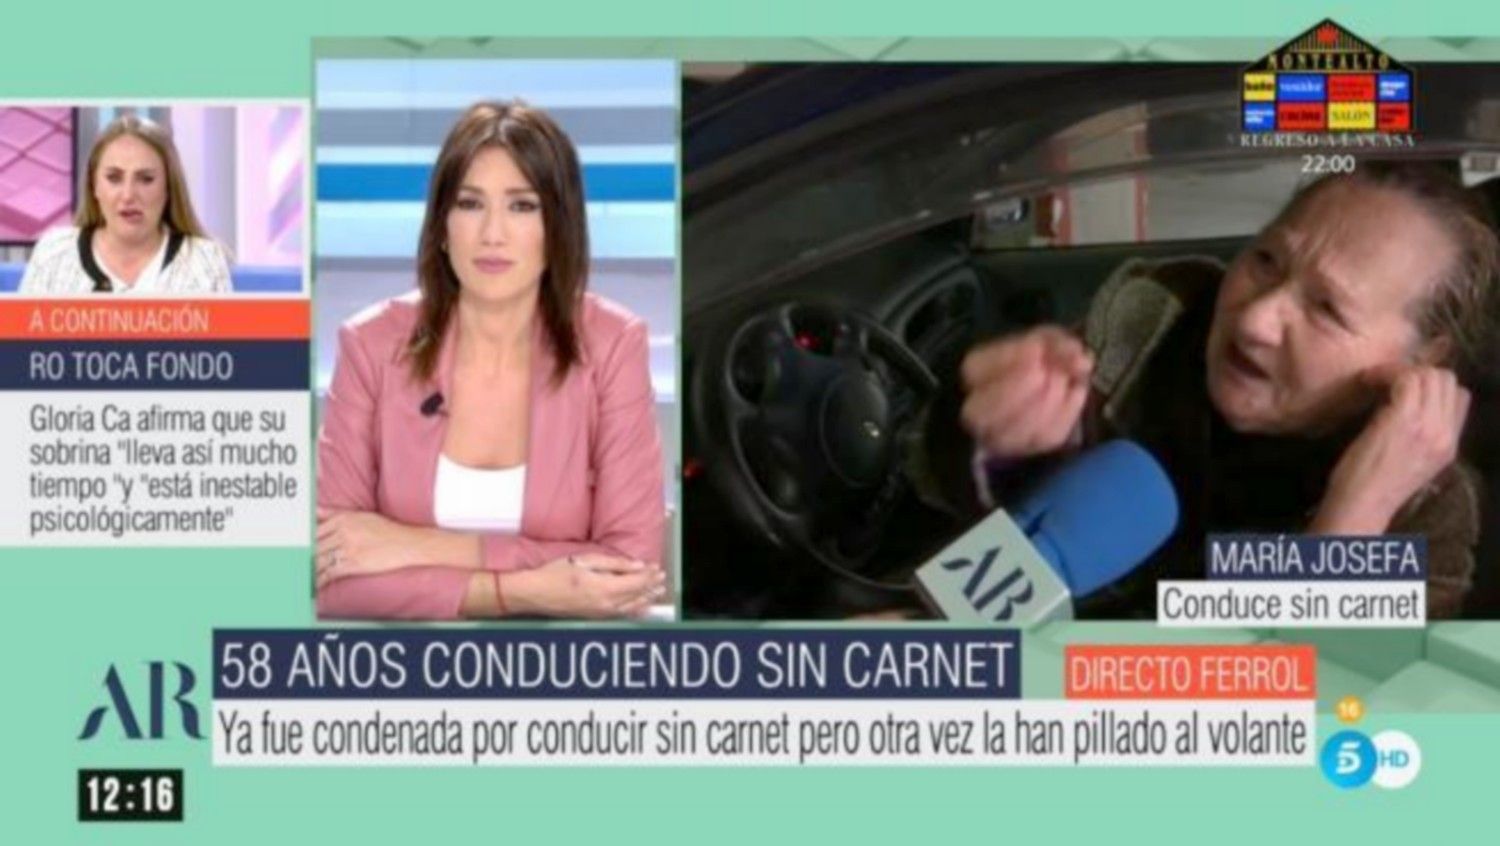 El programa de Ana Rosa en Telecinco entrevista a una mujer que lleva 58 años conduciendo sin carnet